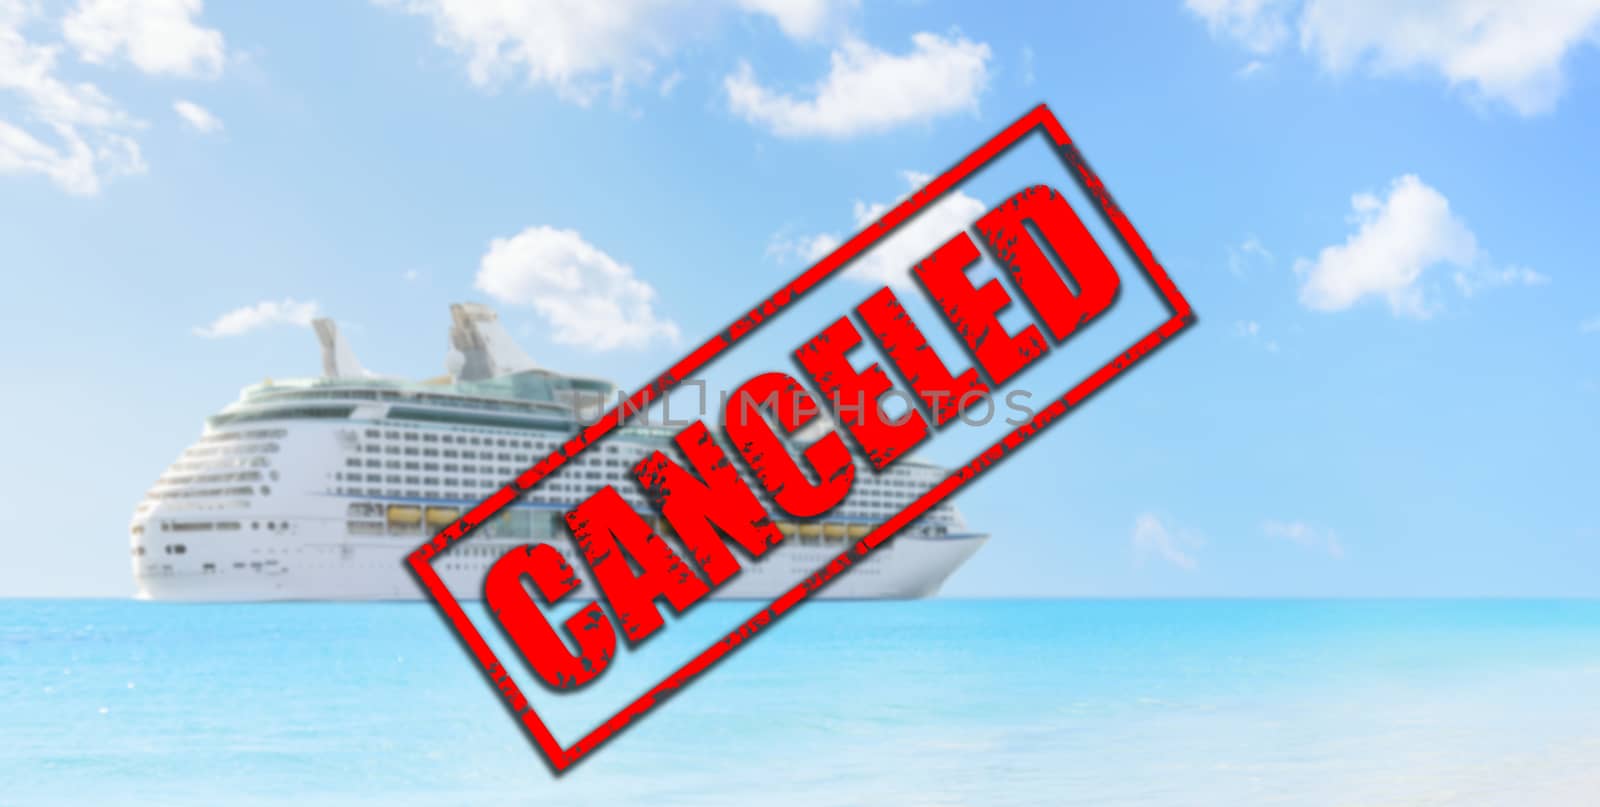 Cruise ship travel holidays canceled because of coronavirus or other by Maridav